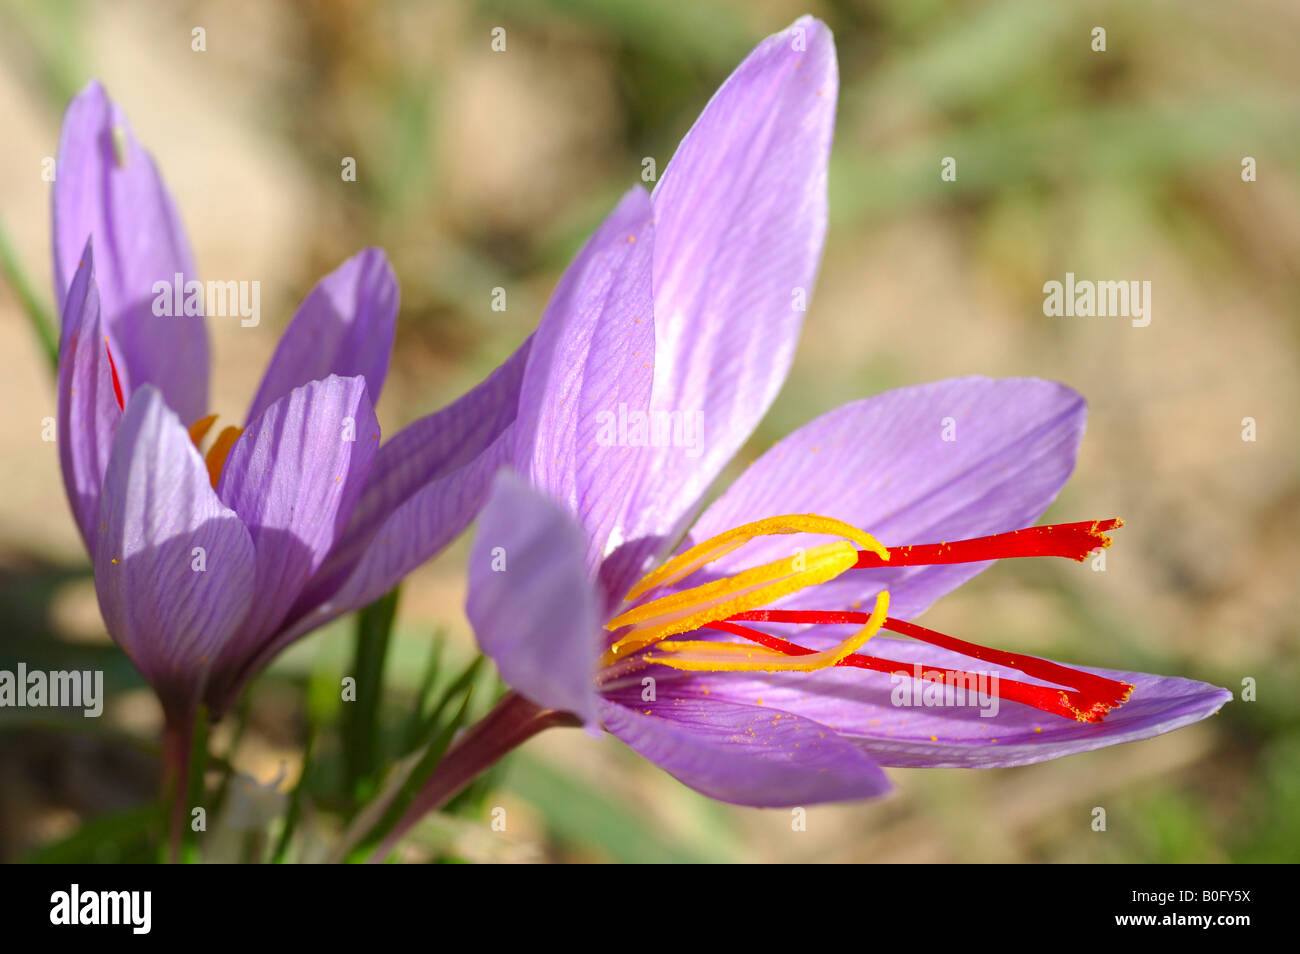 Herbstzeitlose, Safran Blume, Crocus Sativus, Munder Valais Schweiz  Stockfotografie - Alamy